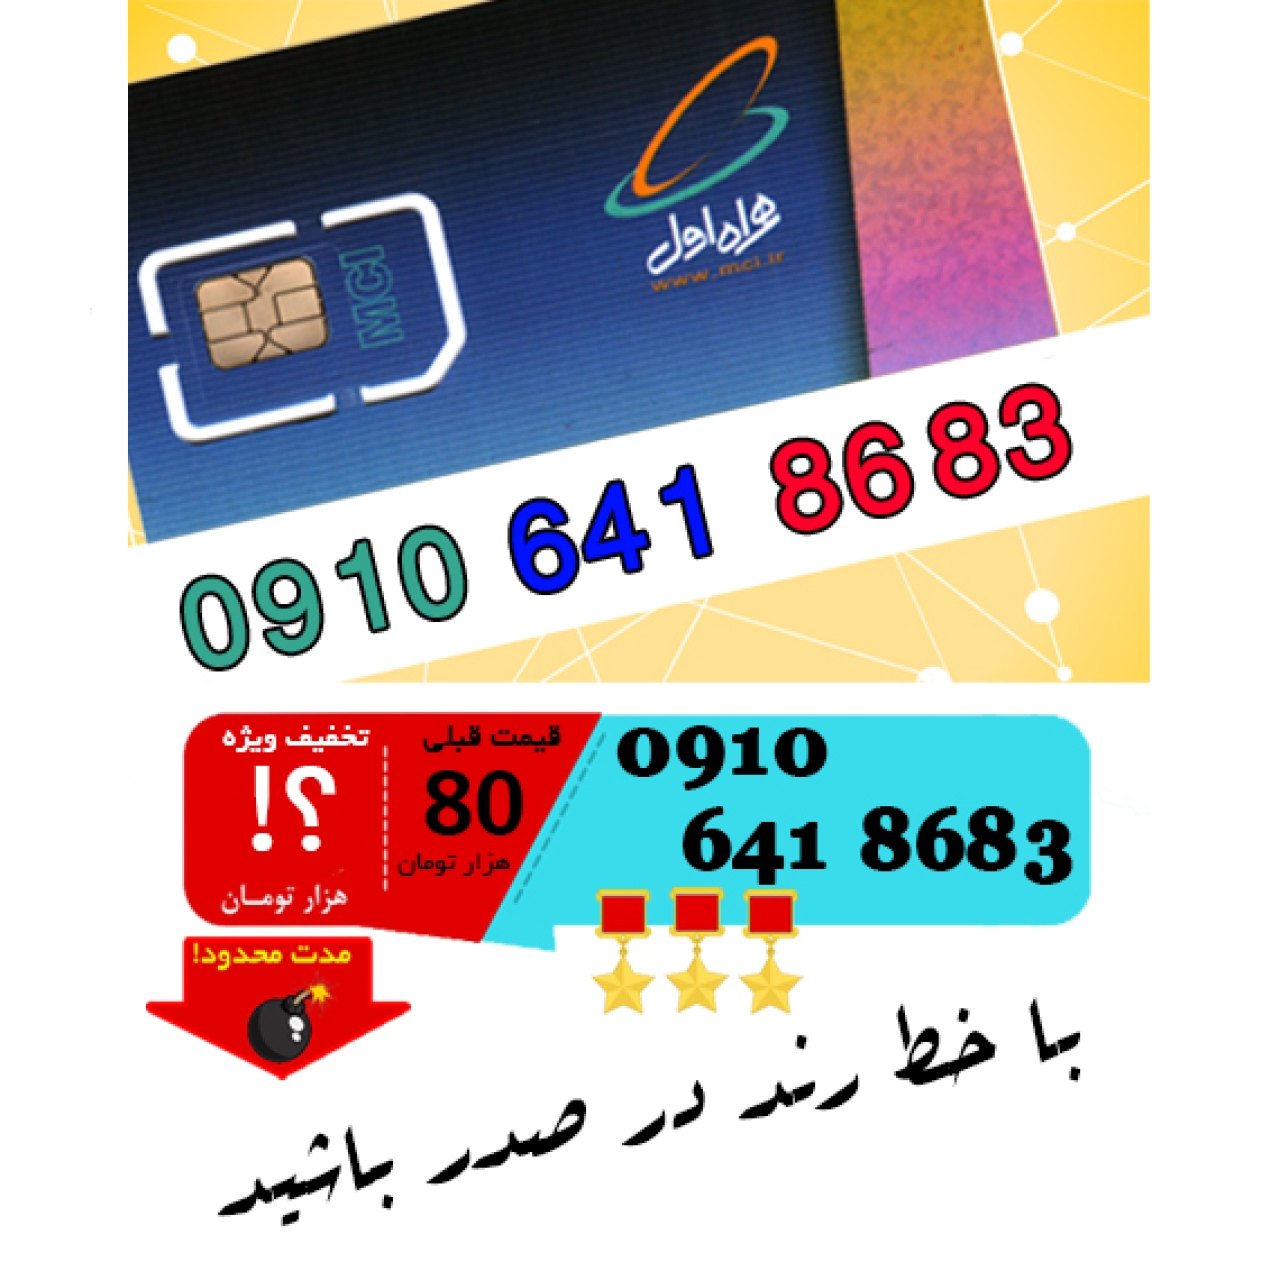 سیم کارت اعتباری رند همراه اول 09106418683